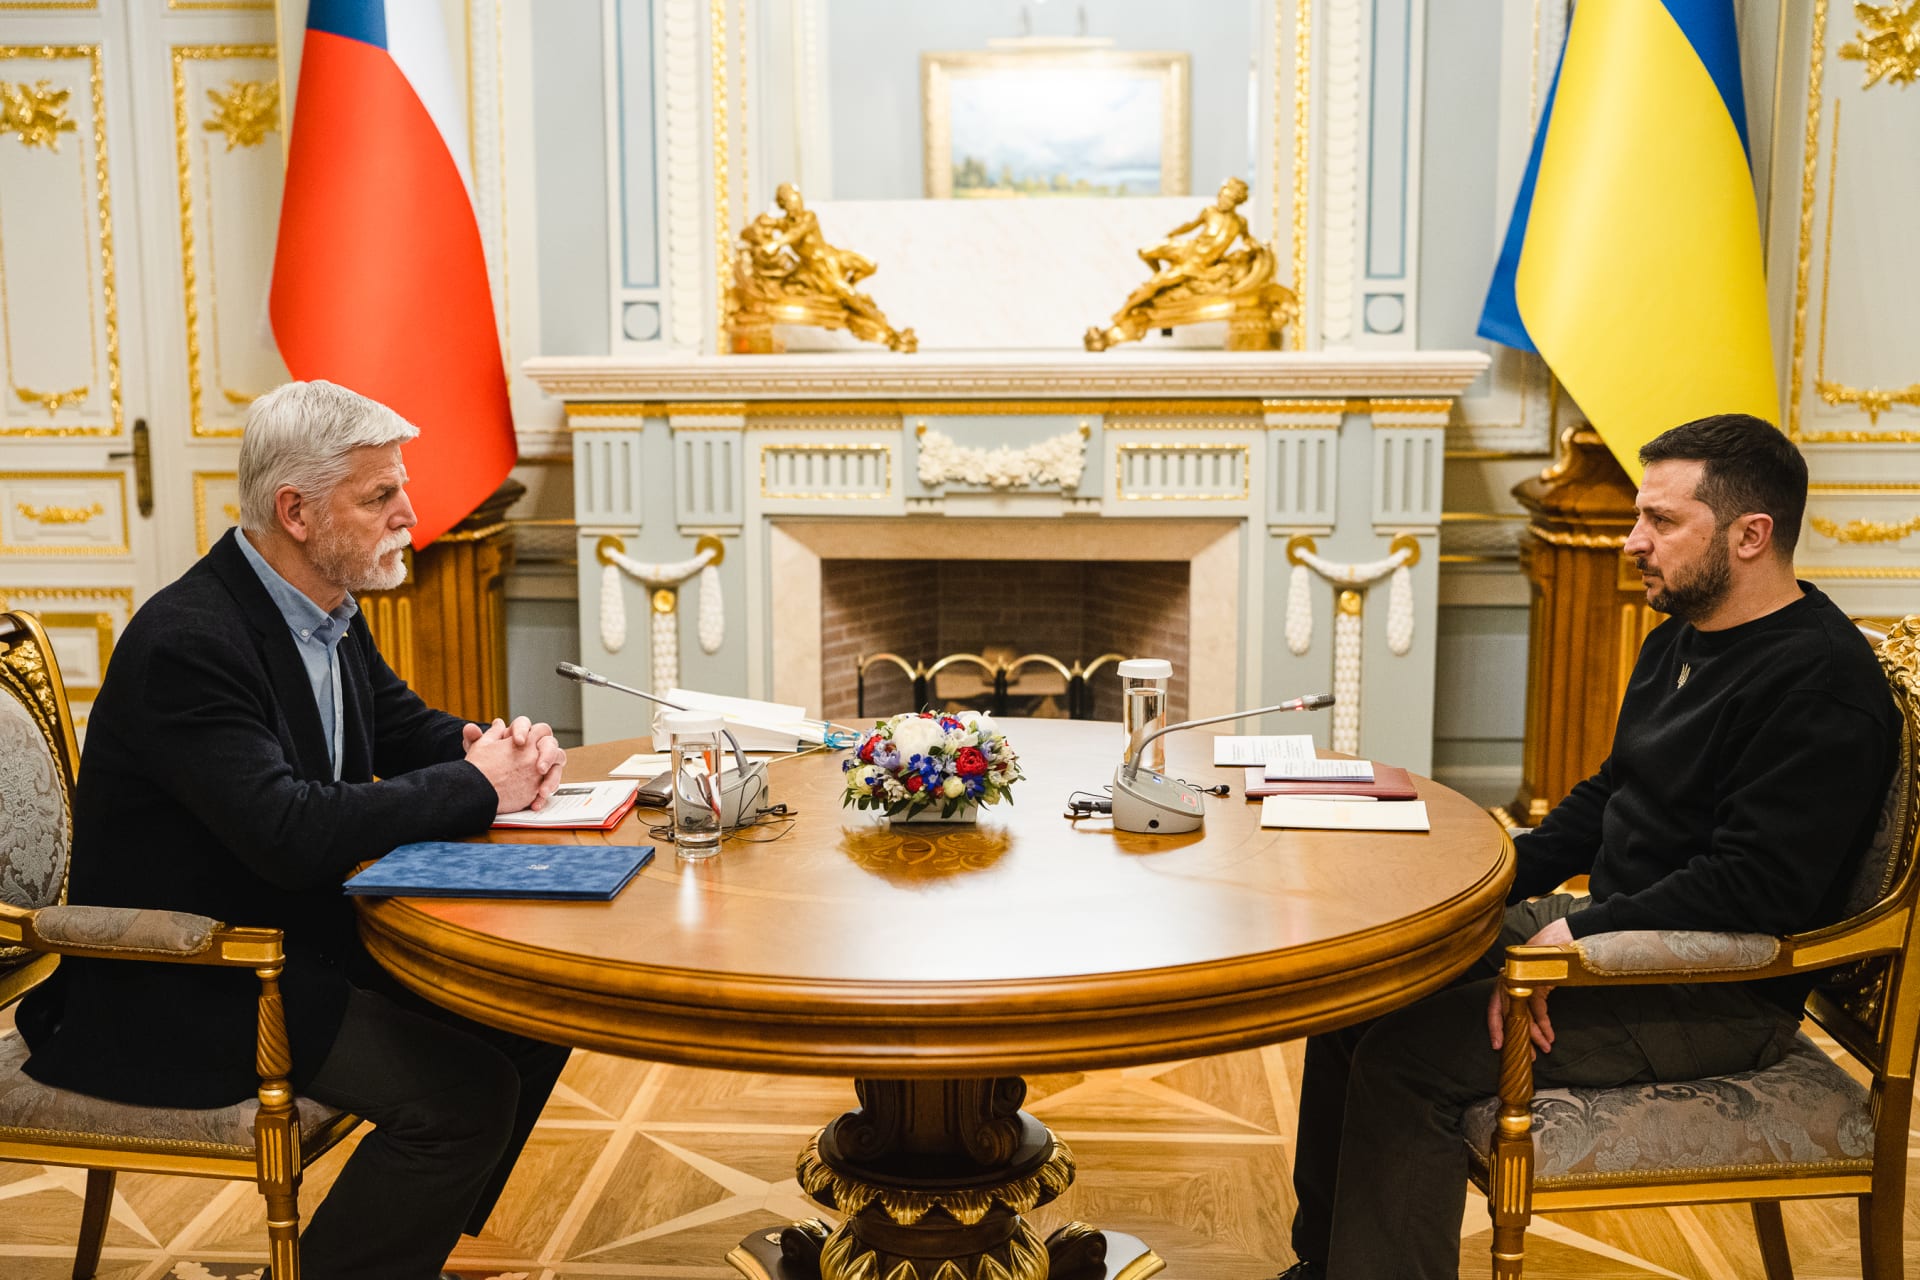 Prezident Pavel se setkal se svým protějškem Volodymyrem Zelenským.